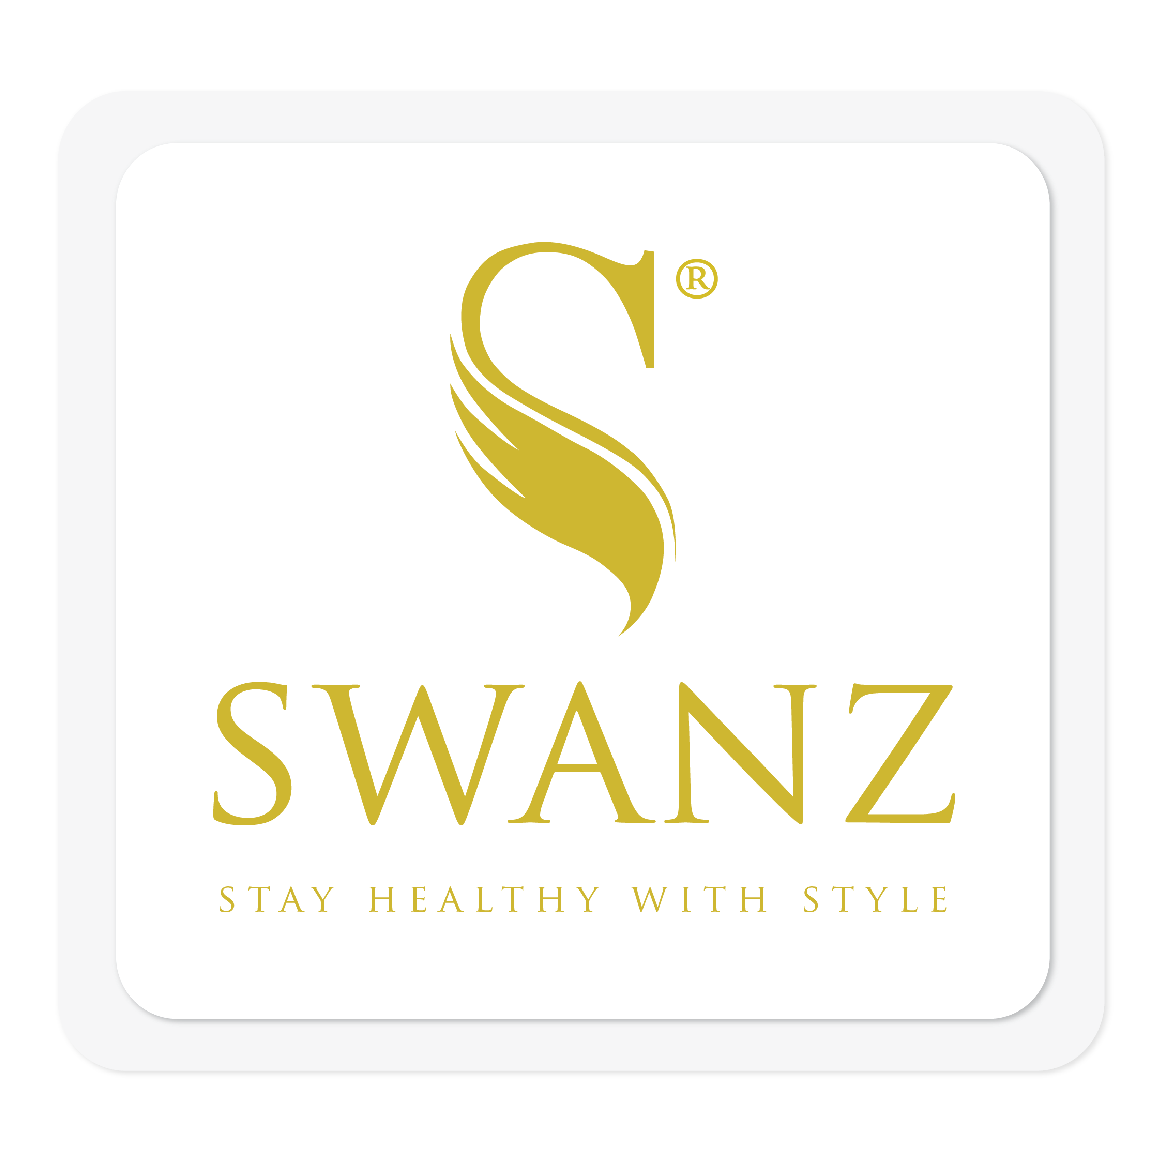 Swanz Brand